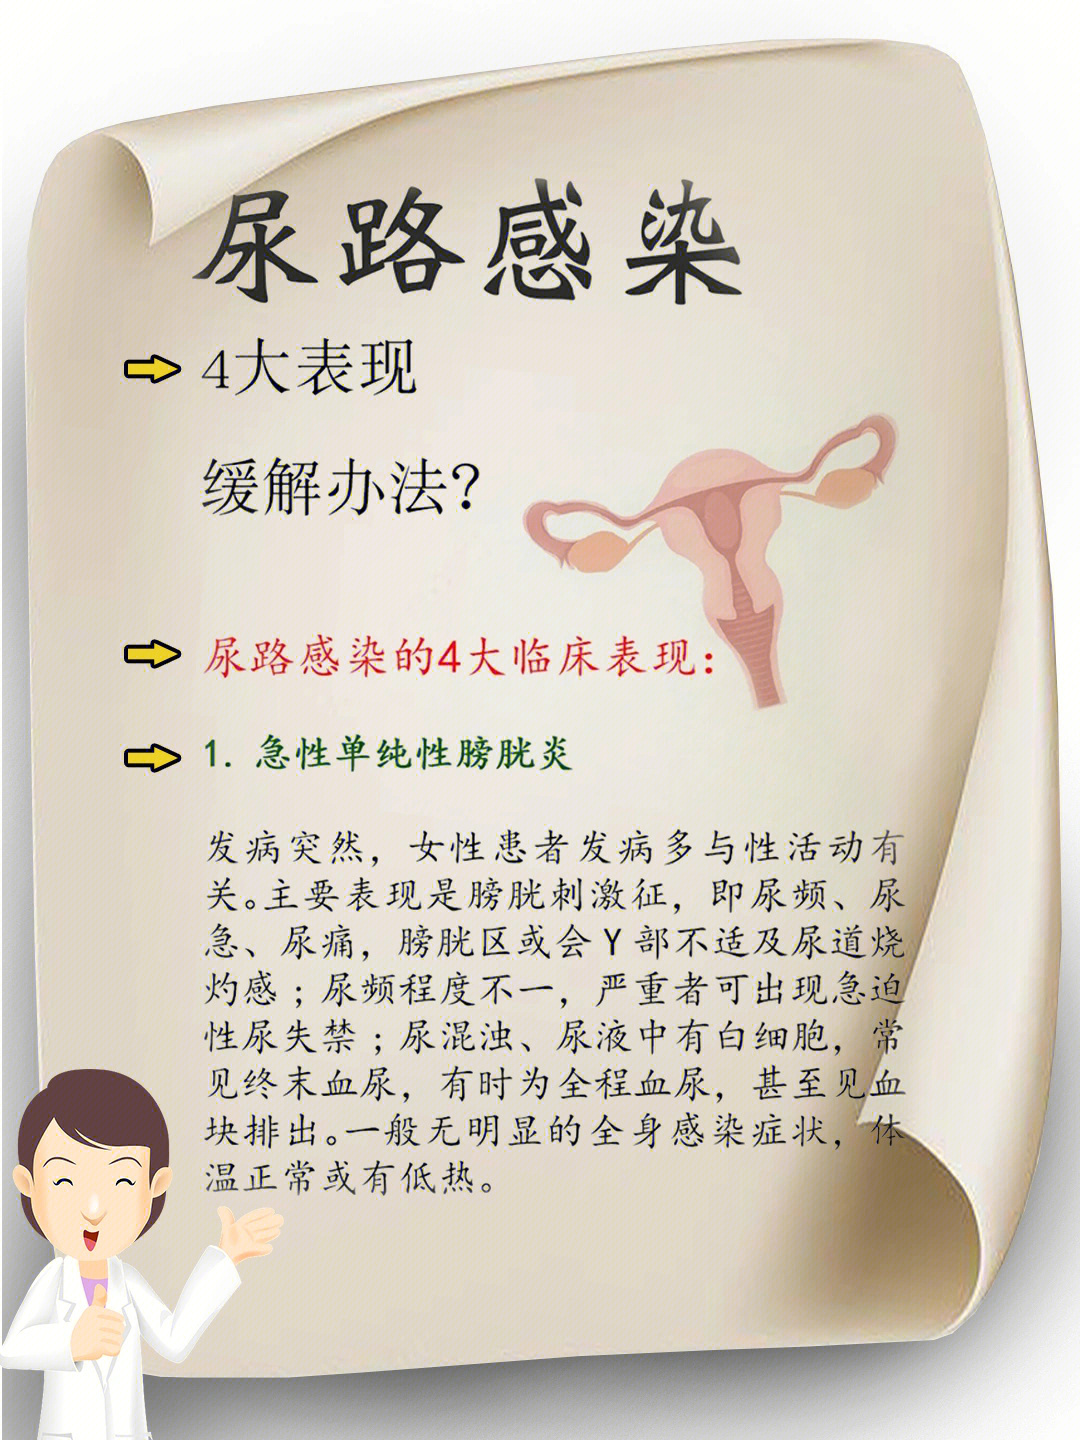 女性尿道感染尿液图片图片